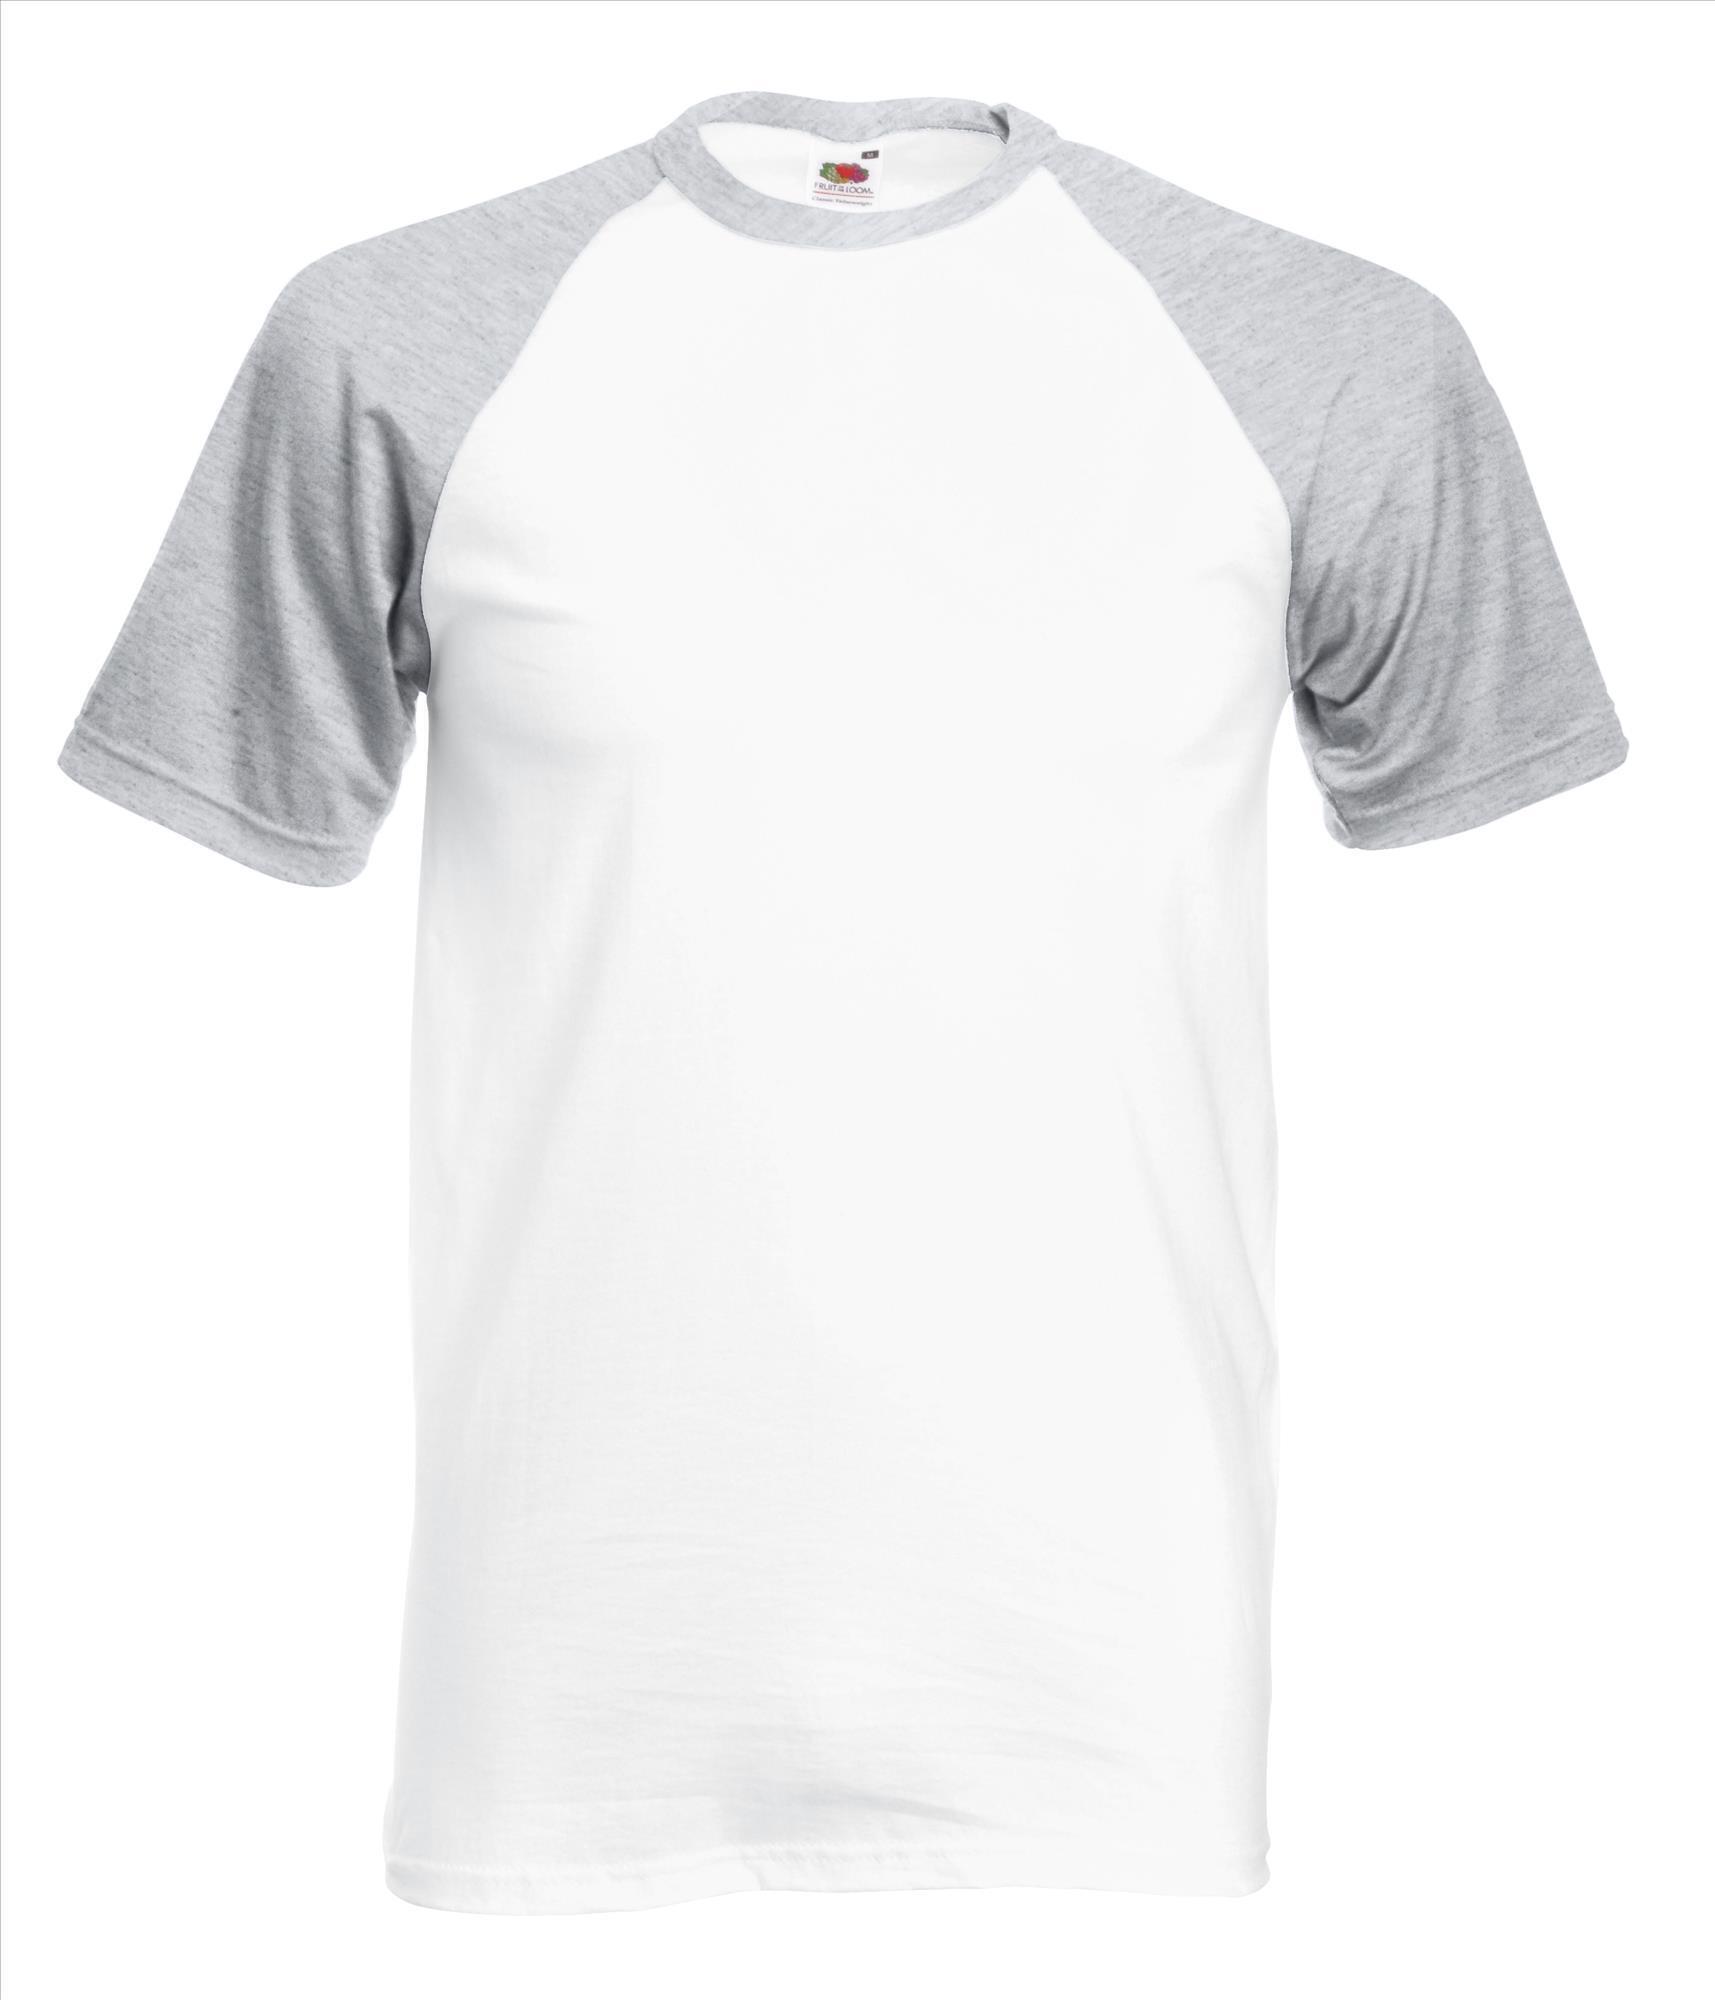 Heren T-shirt met raglanmouwen voor mannen wit met grijze mouwen